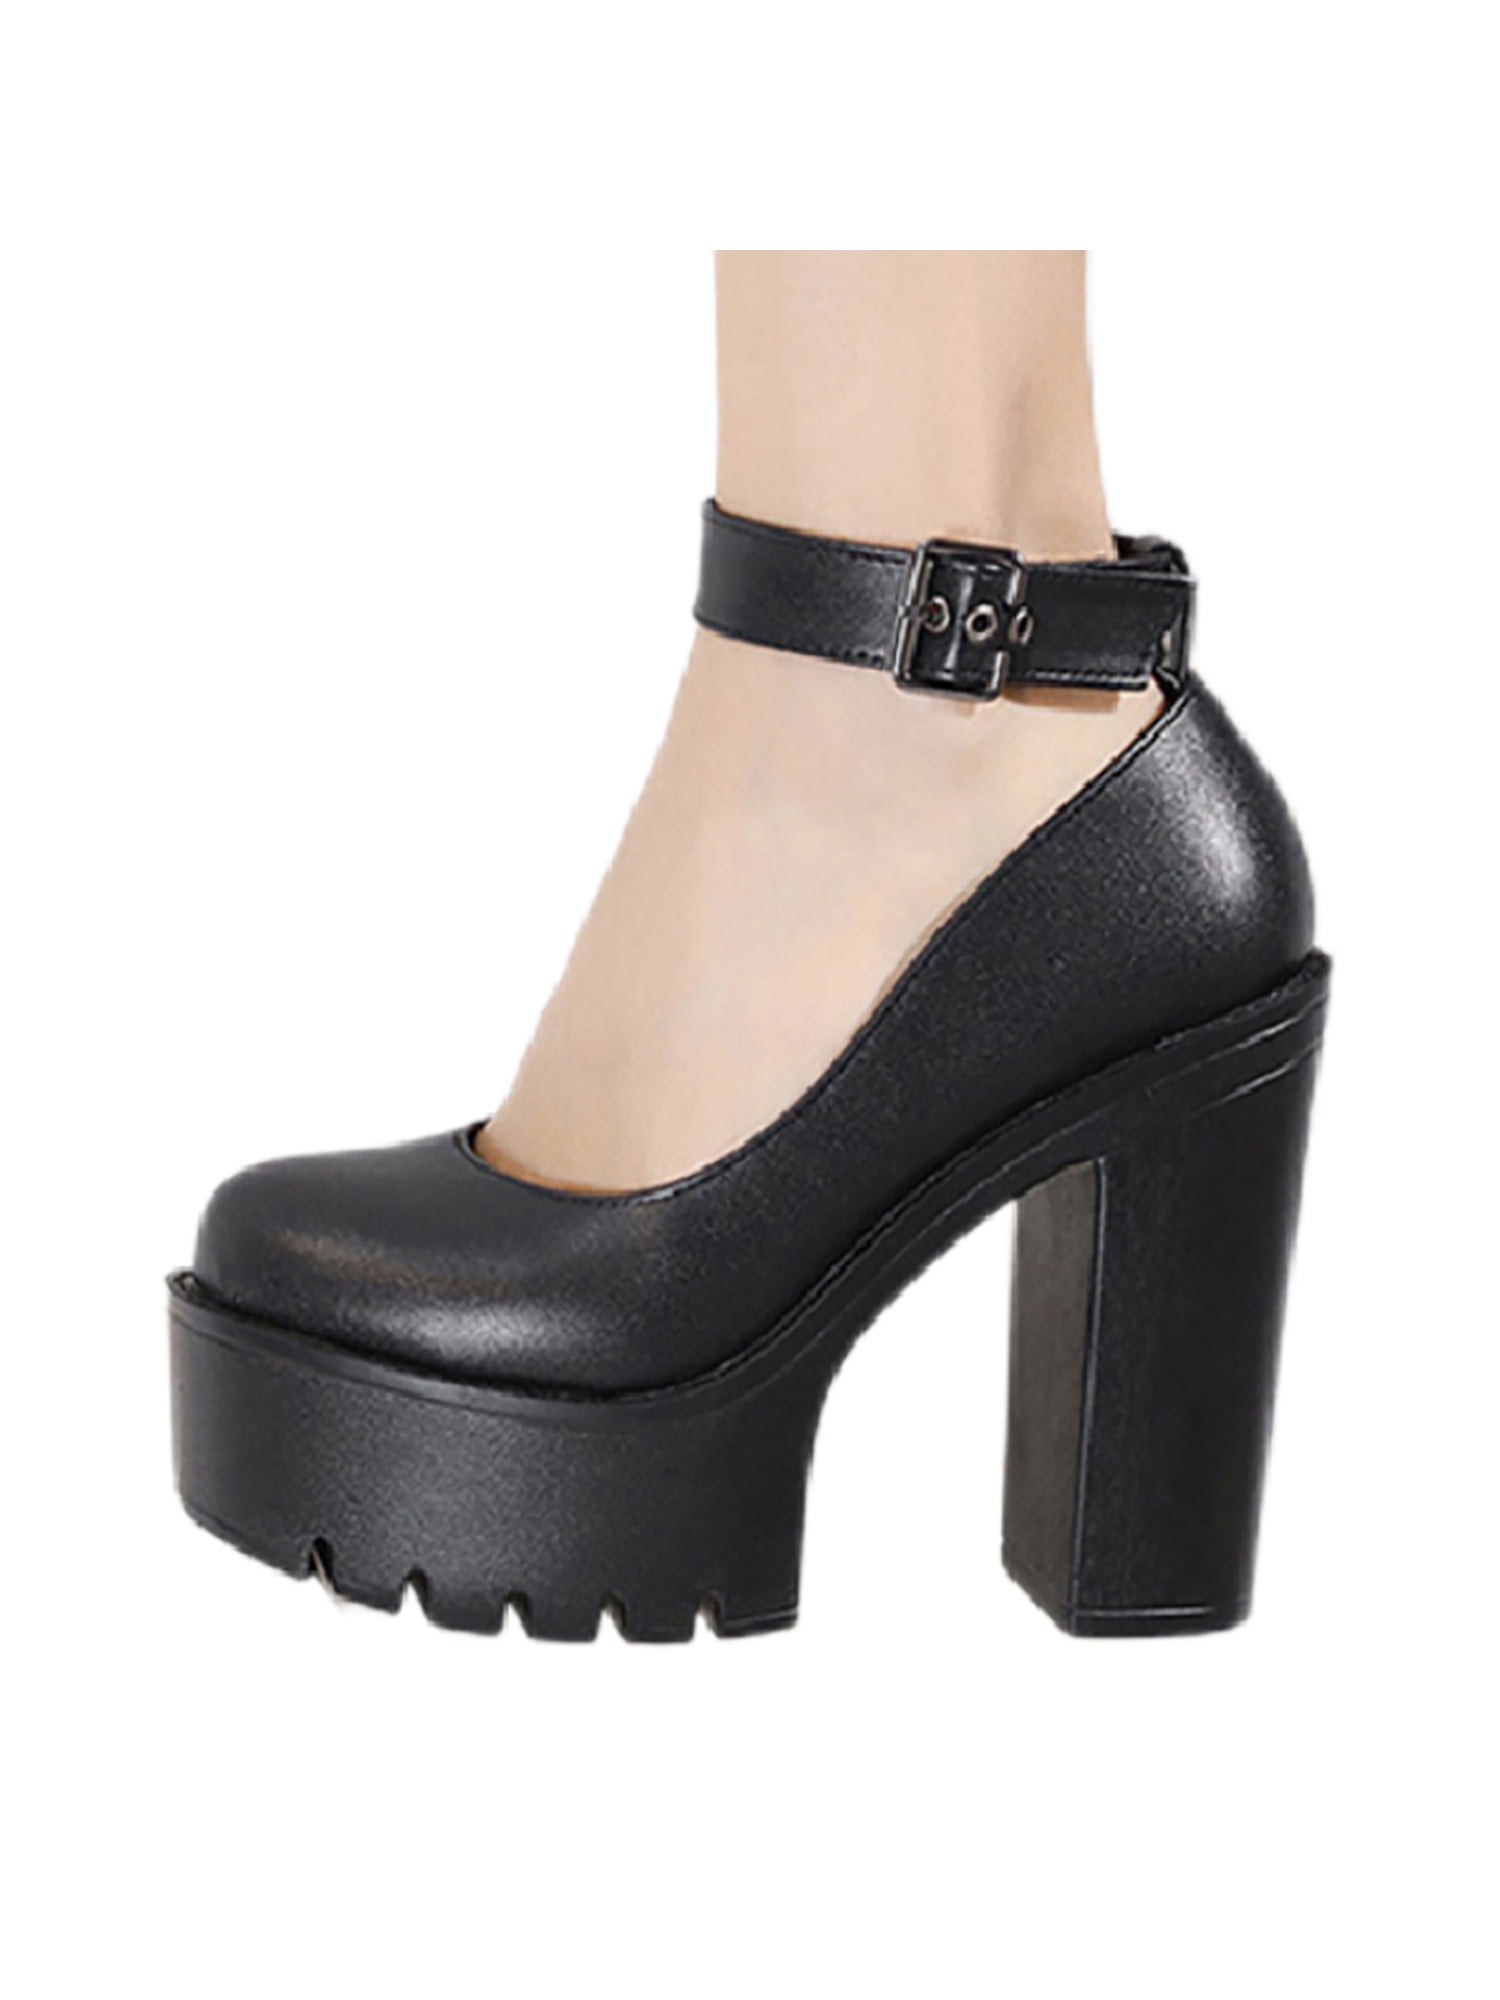 MK Michael Kors Black Suede Haven Ankle Strap Platform Pumps Heels 8 | Platform  pumps heels, Heels, Michael kors black